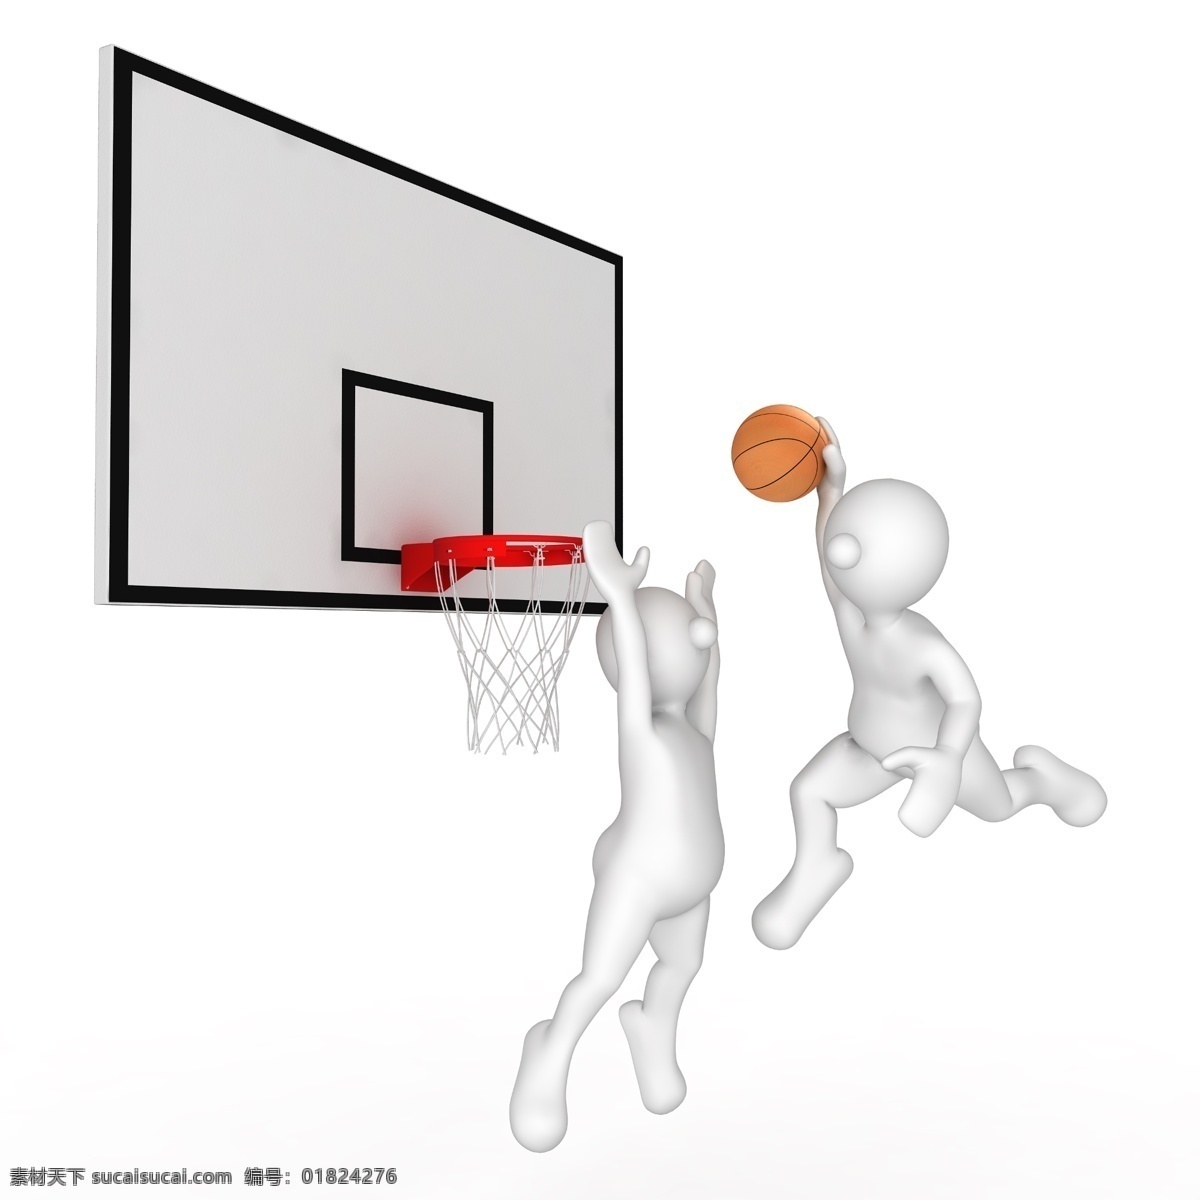 打篮球 篮球 扣篮 篮球运动 投篮 篮框 篮板 攻防 3d小人 白色小人 3d人物 3d设计